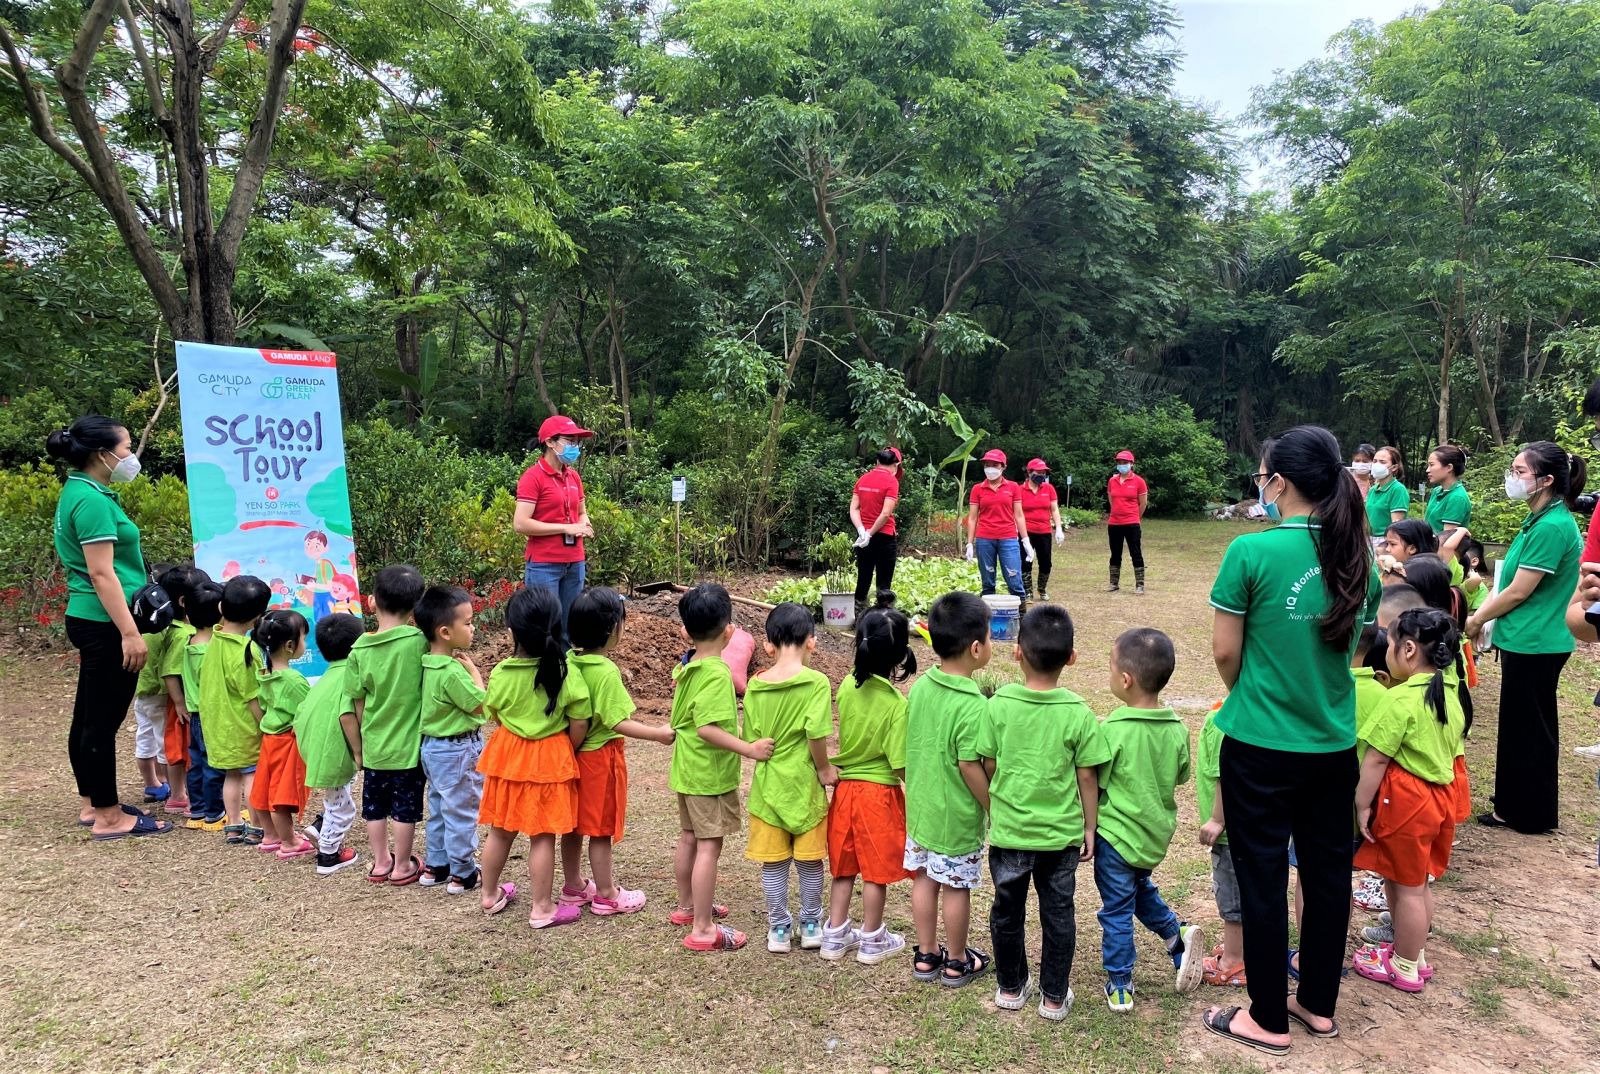 Hoạt động “School tour” đến thăm vườn ươm Gamuda của các cháu mẫu giáo Hà Nội